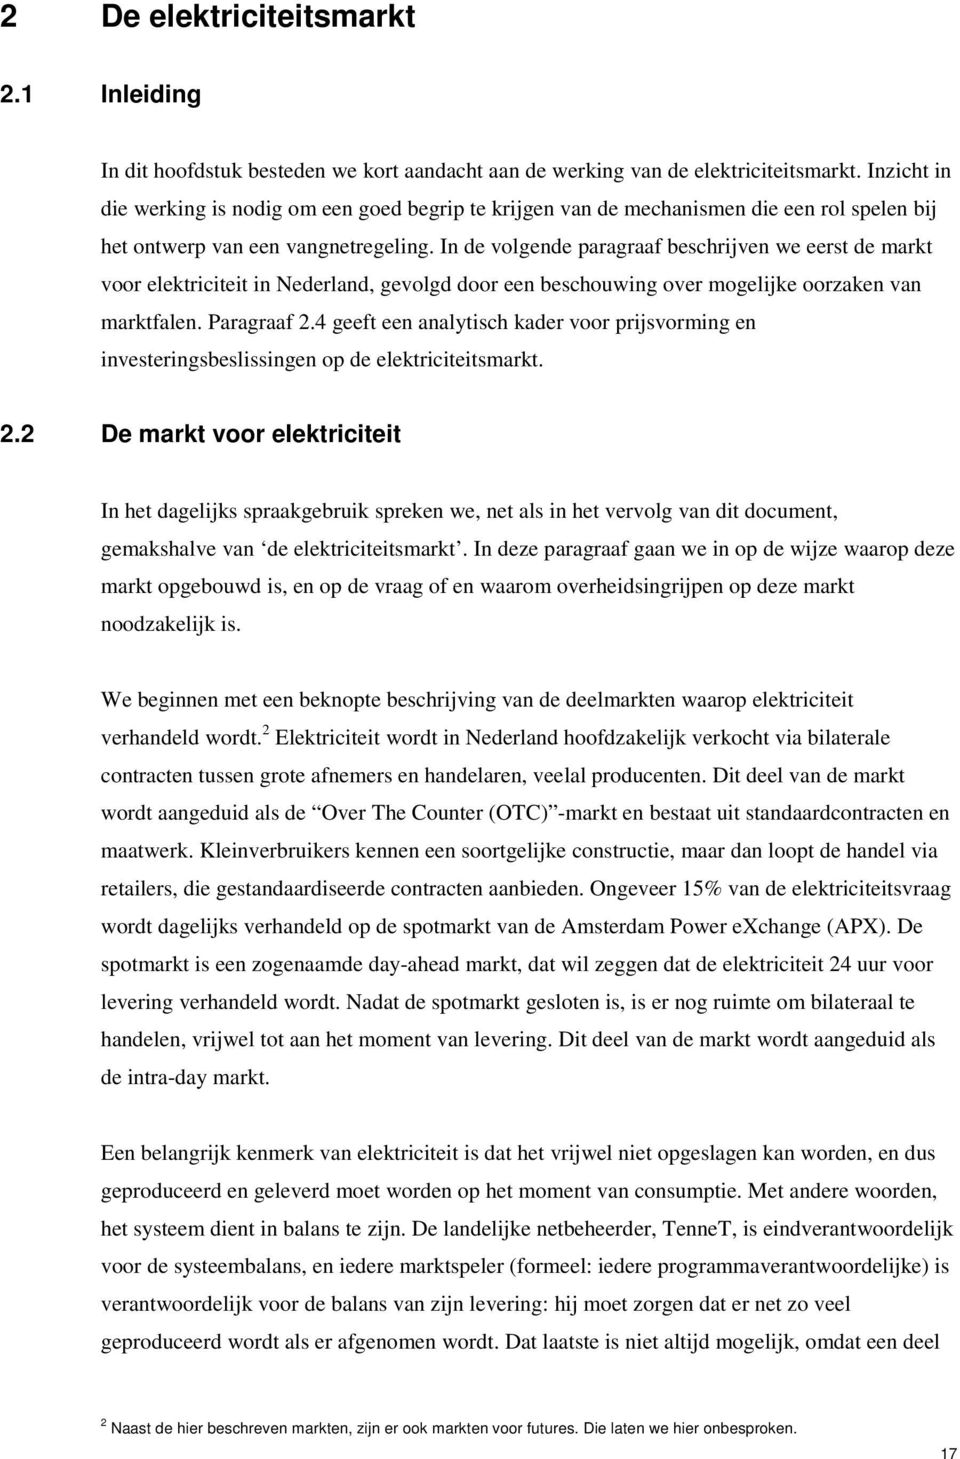 In de volgende paragraaf beschrijven we eerst de markt voor elektriciteit in Nederland, gevolgd door een beschouwing over mogelijke oorzaken van marktfalen. Paragraaf 2.